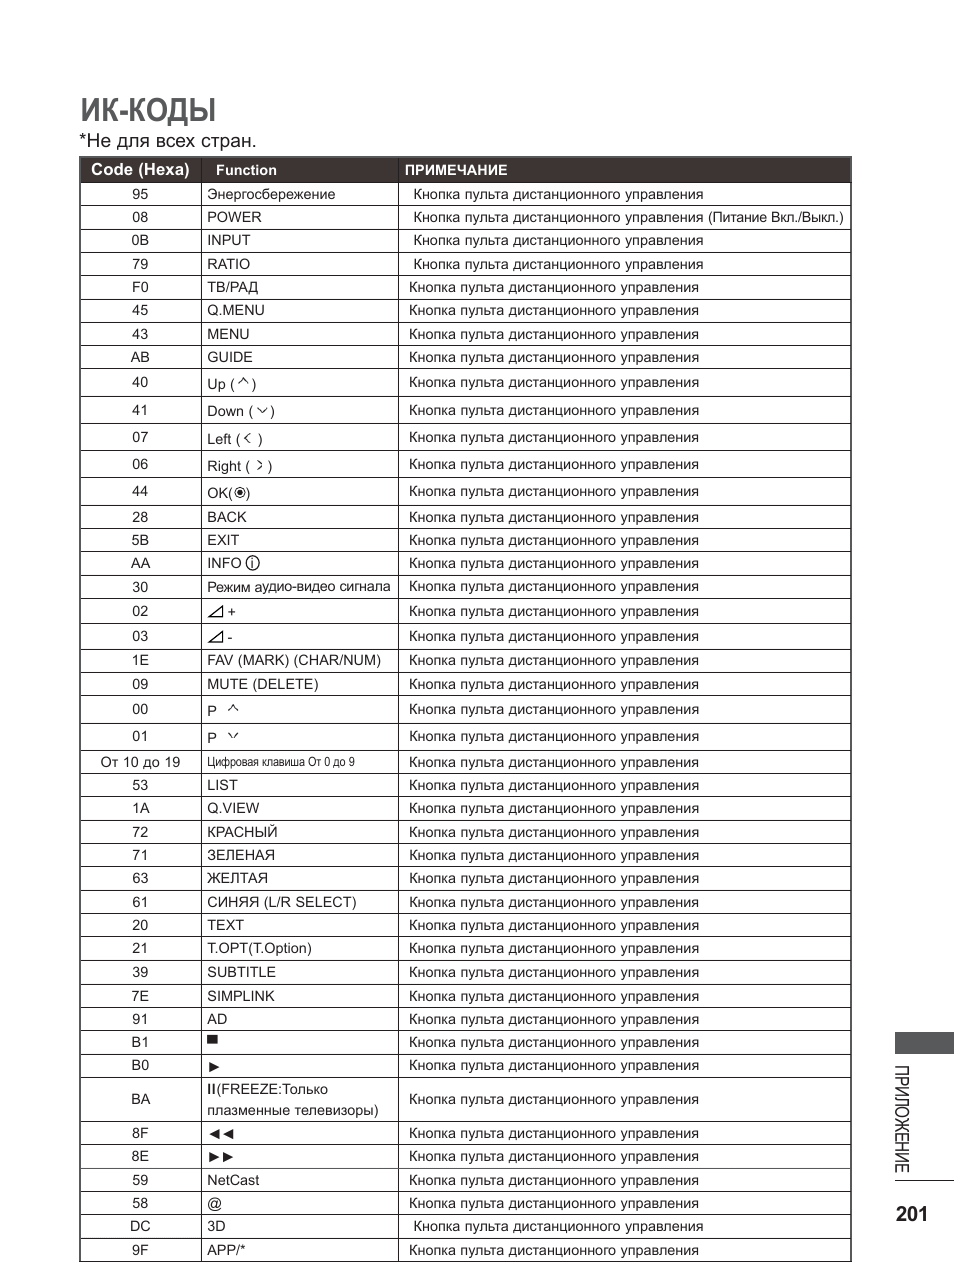 Универсальный код для lg телевизоров. Универсальный пульт для телевизора LG коды телевизоров LG. Коды для пульта ТВ LG. Список кодов для универсальных пультов для телевизоров LG. Таблица кодов для телевизоров LG.